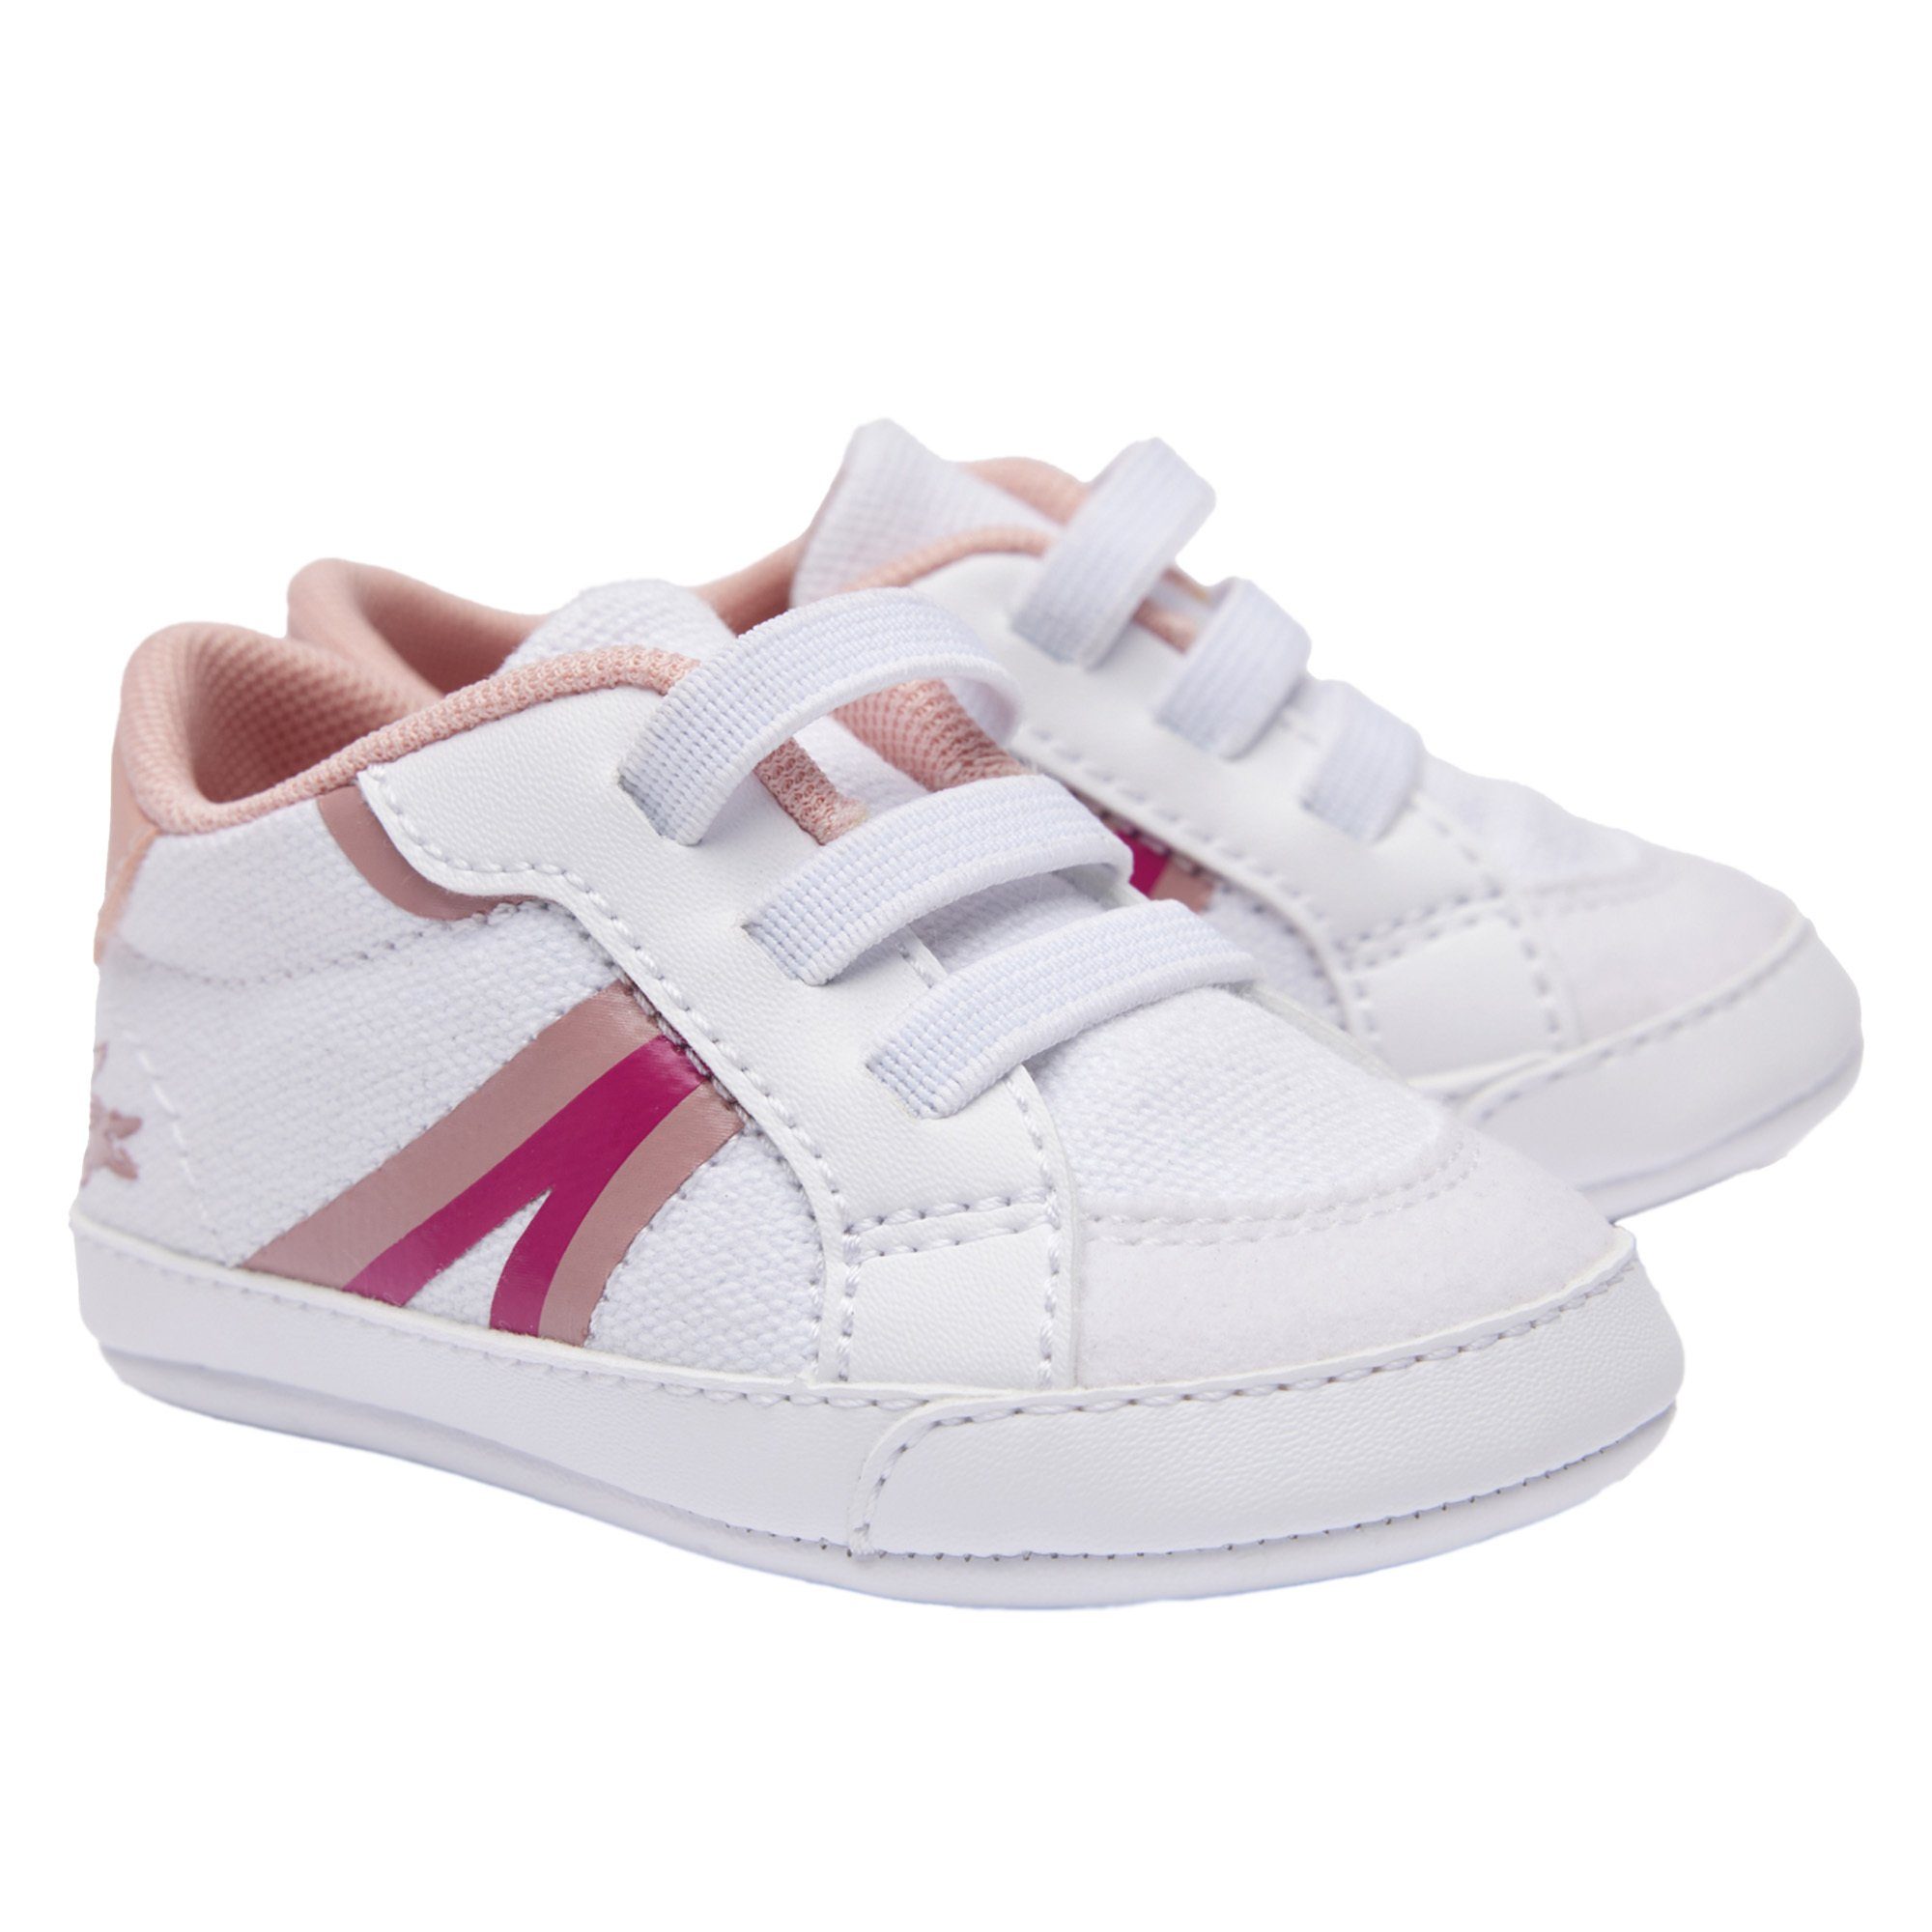 Lacoste Baby Schuhe - L004 Cub, Krabbelschuhe, Sneaker, Krabbelschuh Weiß/Pink